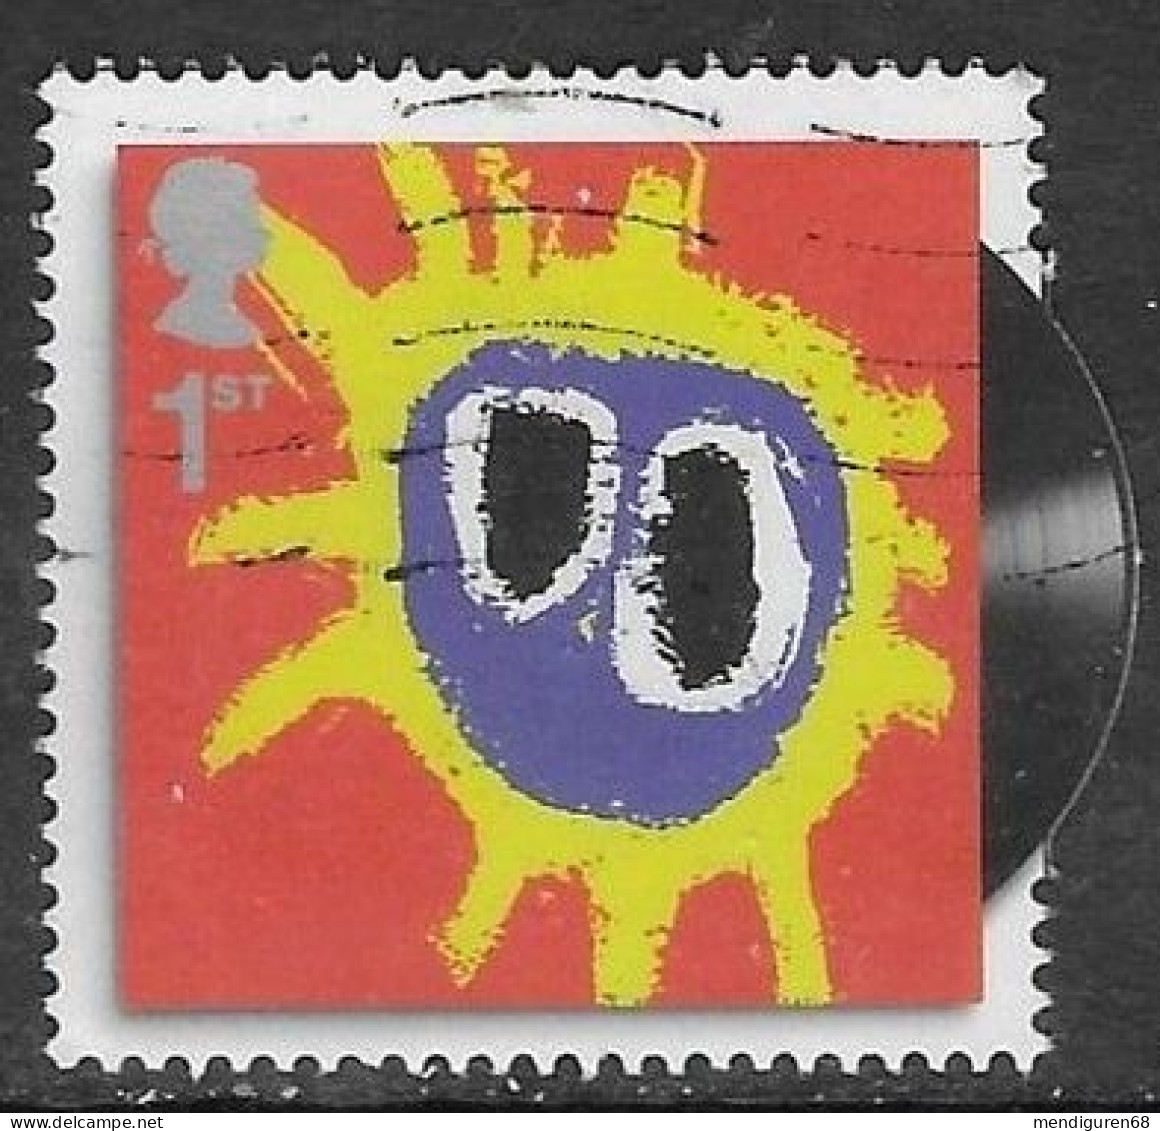 GROSBRITANNIEN GRANDE BRETAGNE GB 2010 FROM M/S CLASSIC ALBUM COVERS:PRIMAL SCREAM 1ST  SG 3017 SC 2732 MI 2859 YT 3243 - Used Stamps